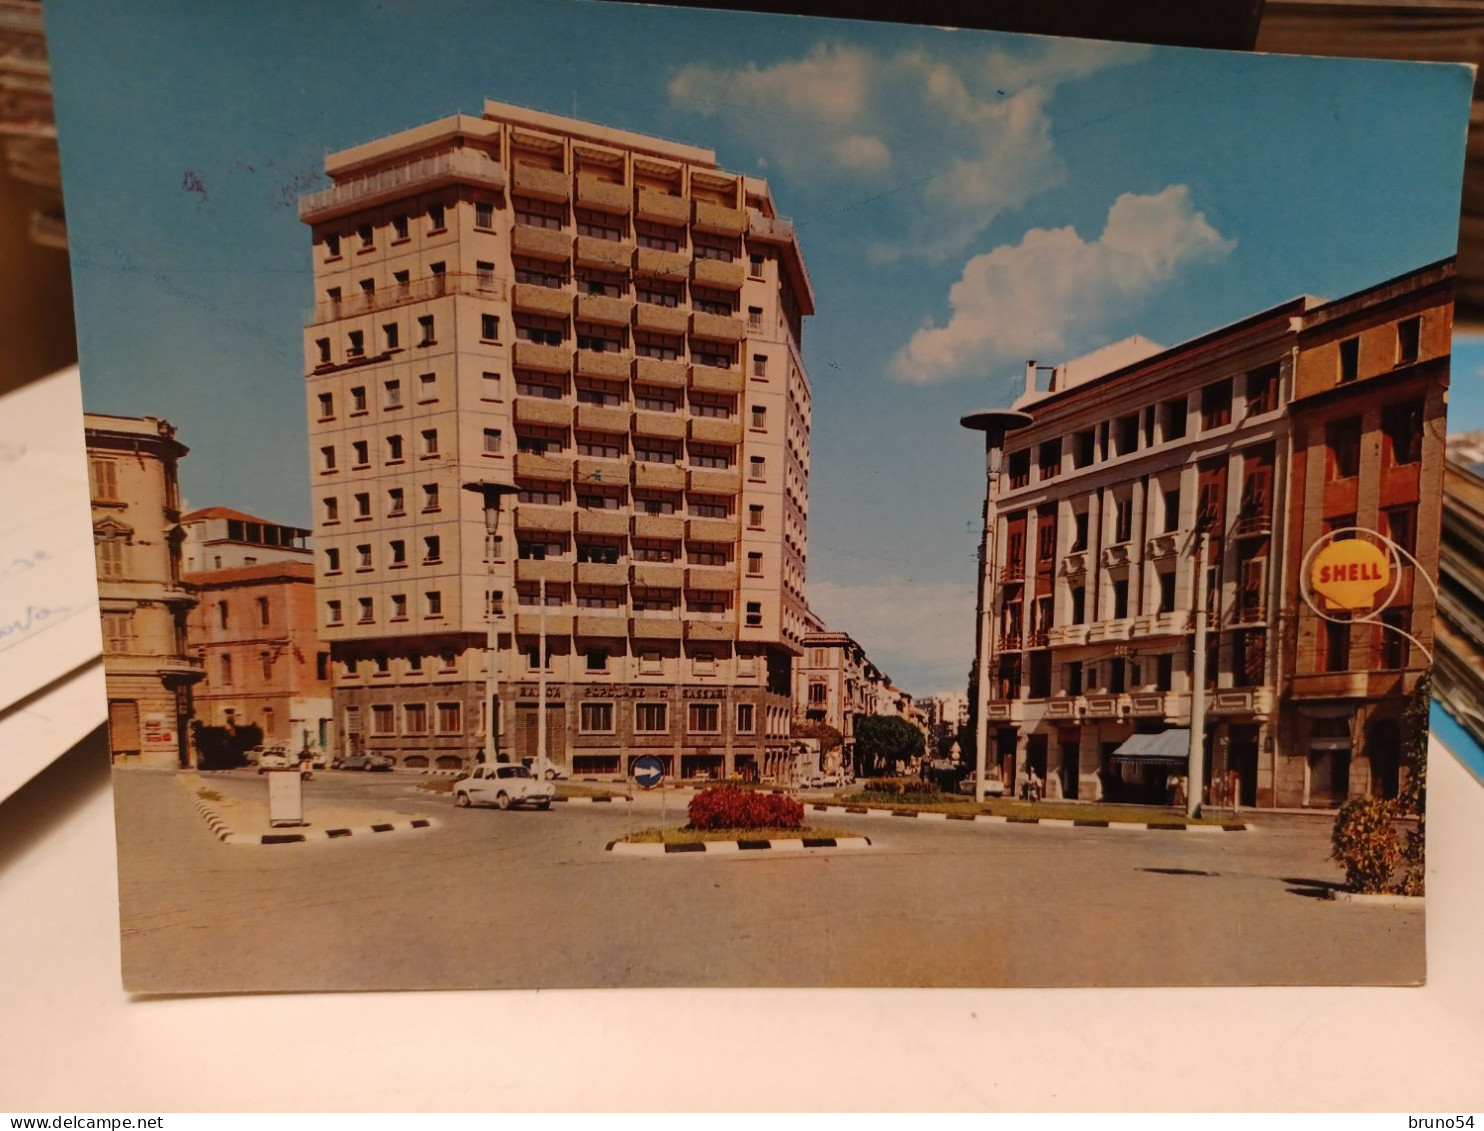 17 cartoline Cagliari anni 70, distributore ,spiaggia fel Poetto,piazza Jenne,piazza Garibaldi,viaRoma,bastioni S.Remy